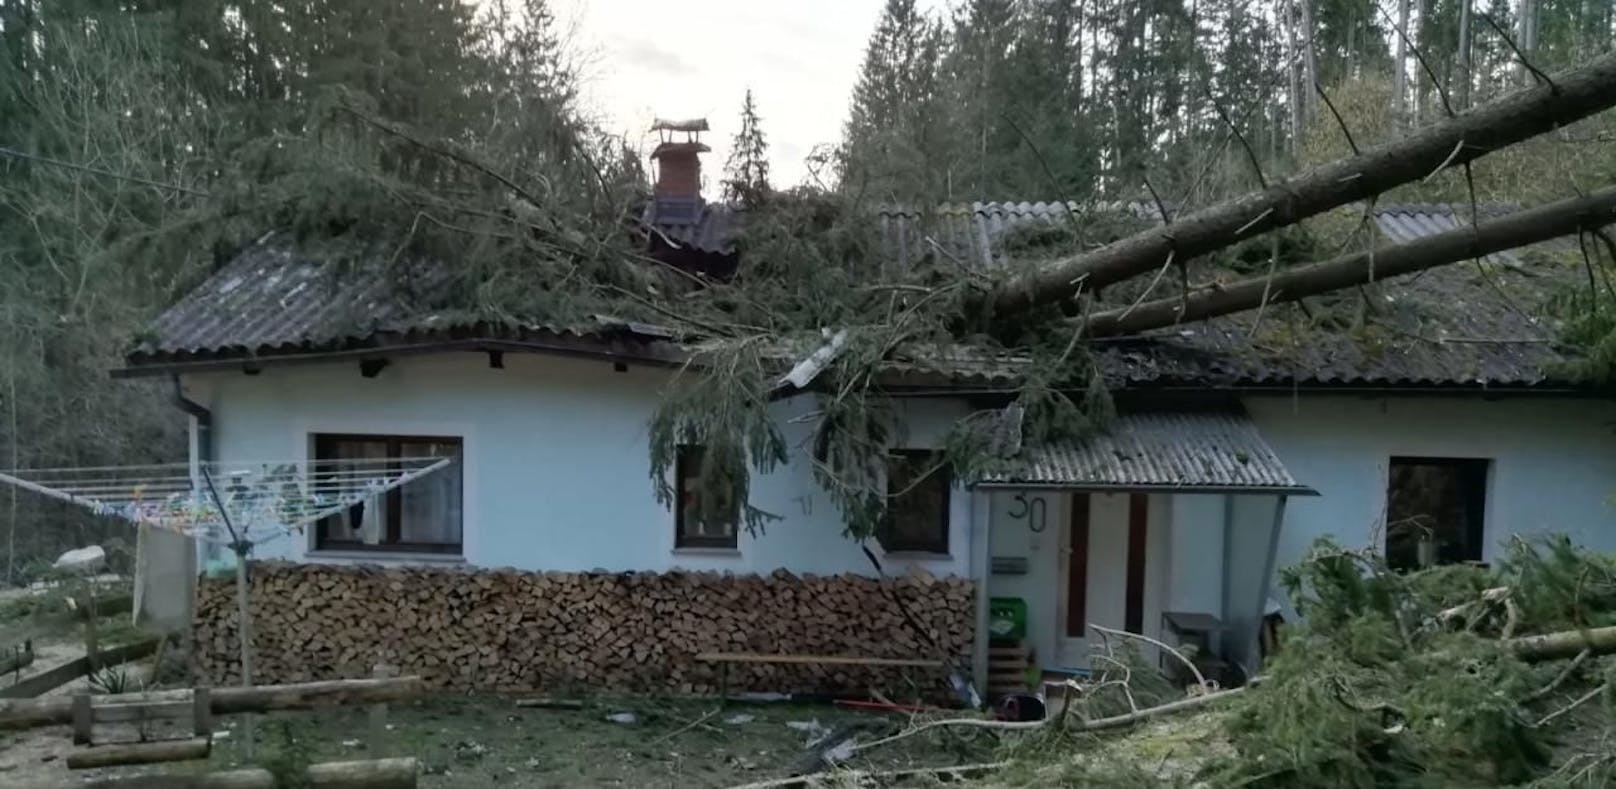 Sturm schleuderte Bäume  auf Wohnhaus und Pkw